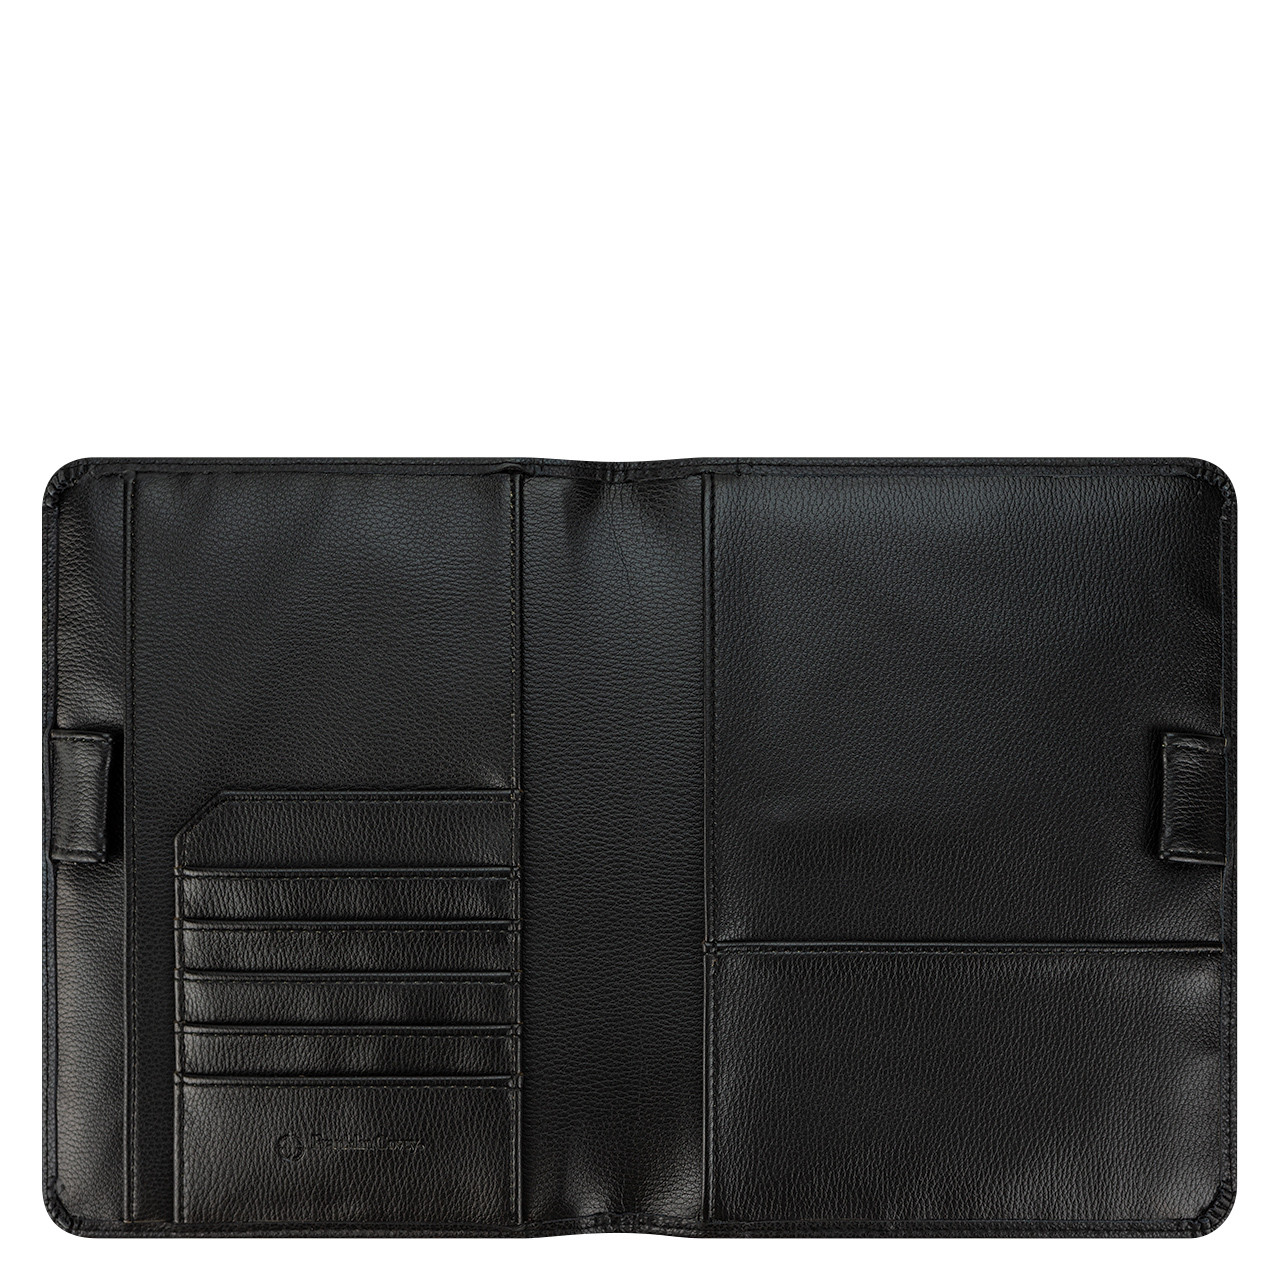 Franklin Men's Leather Wallet